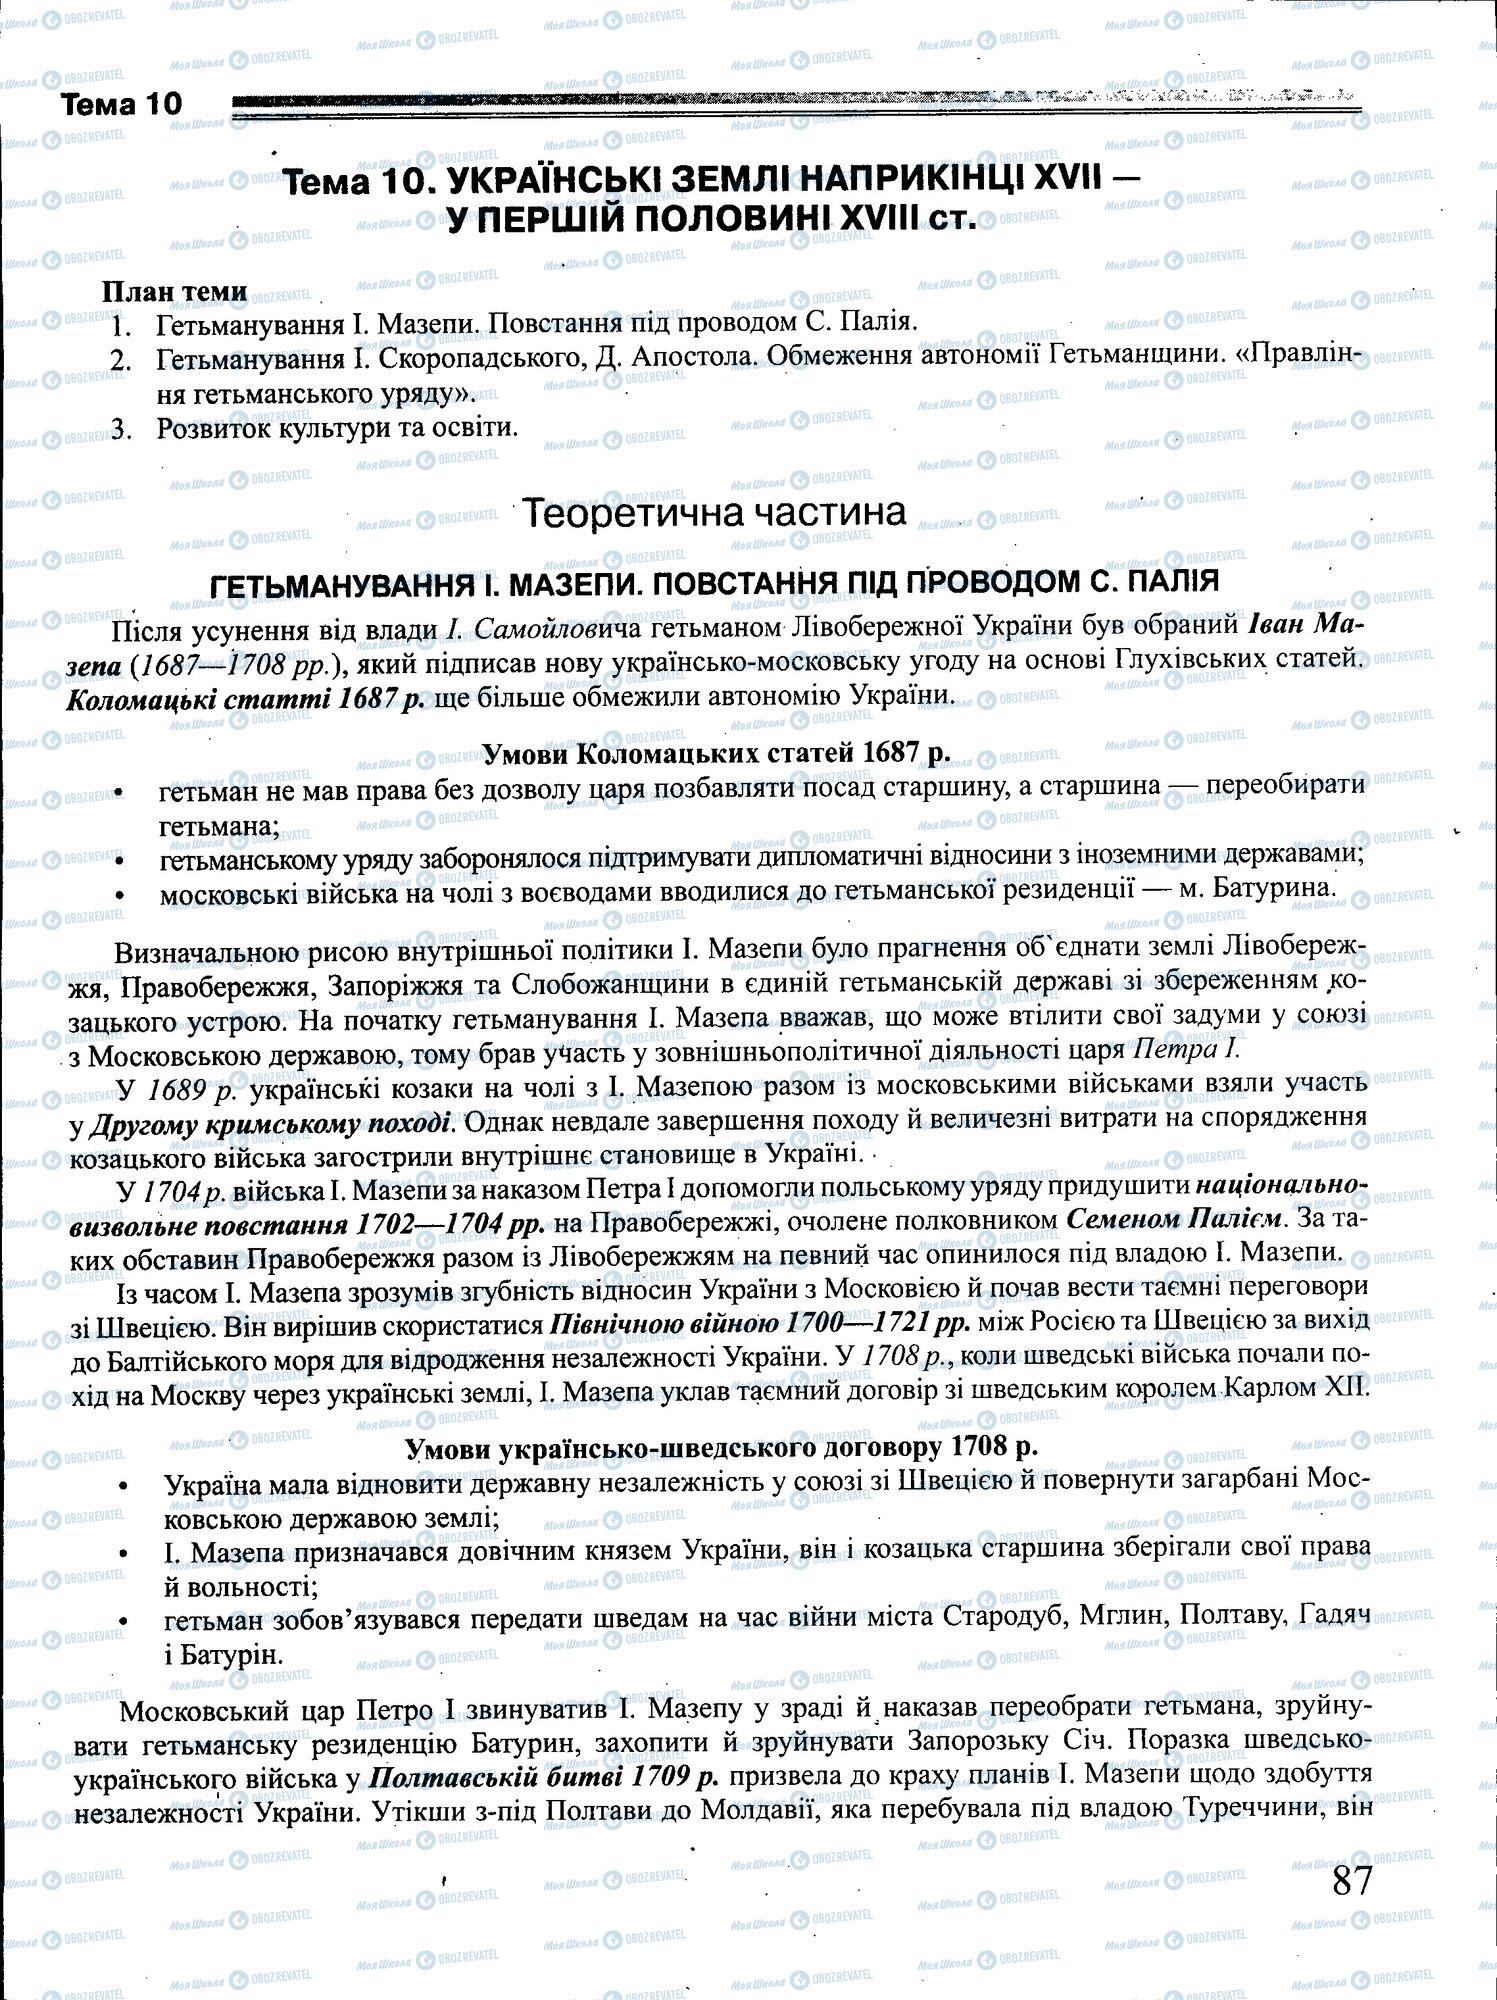 ЗНО История Украины 11 класс страница 087